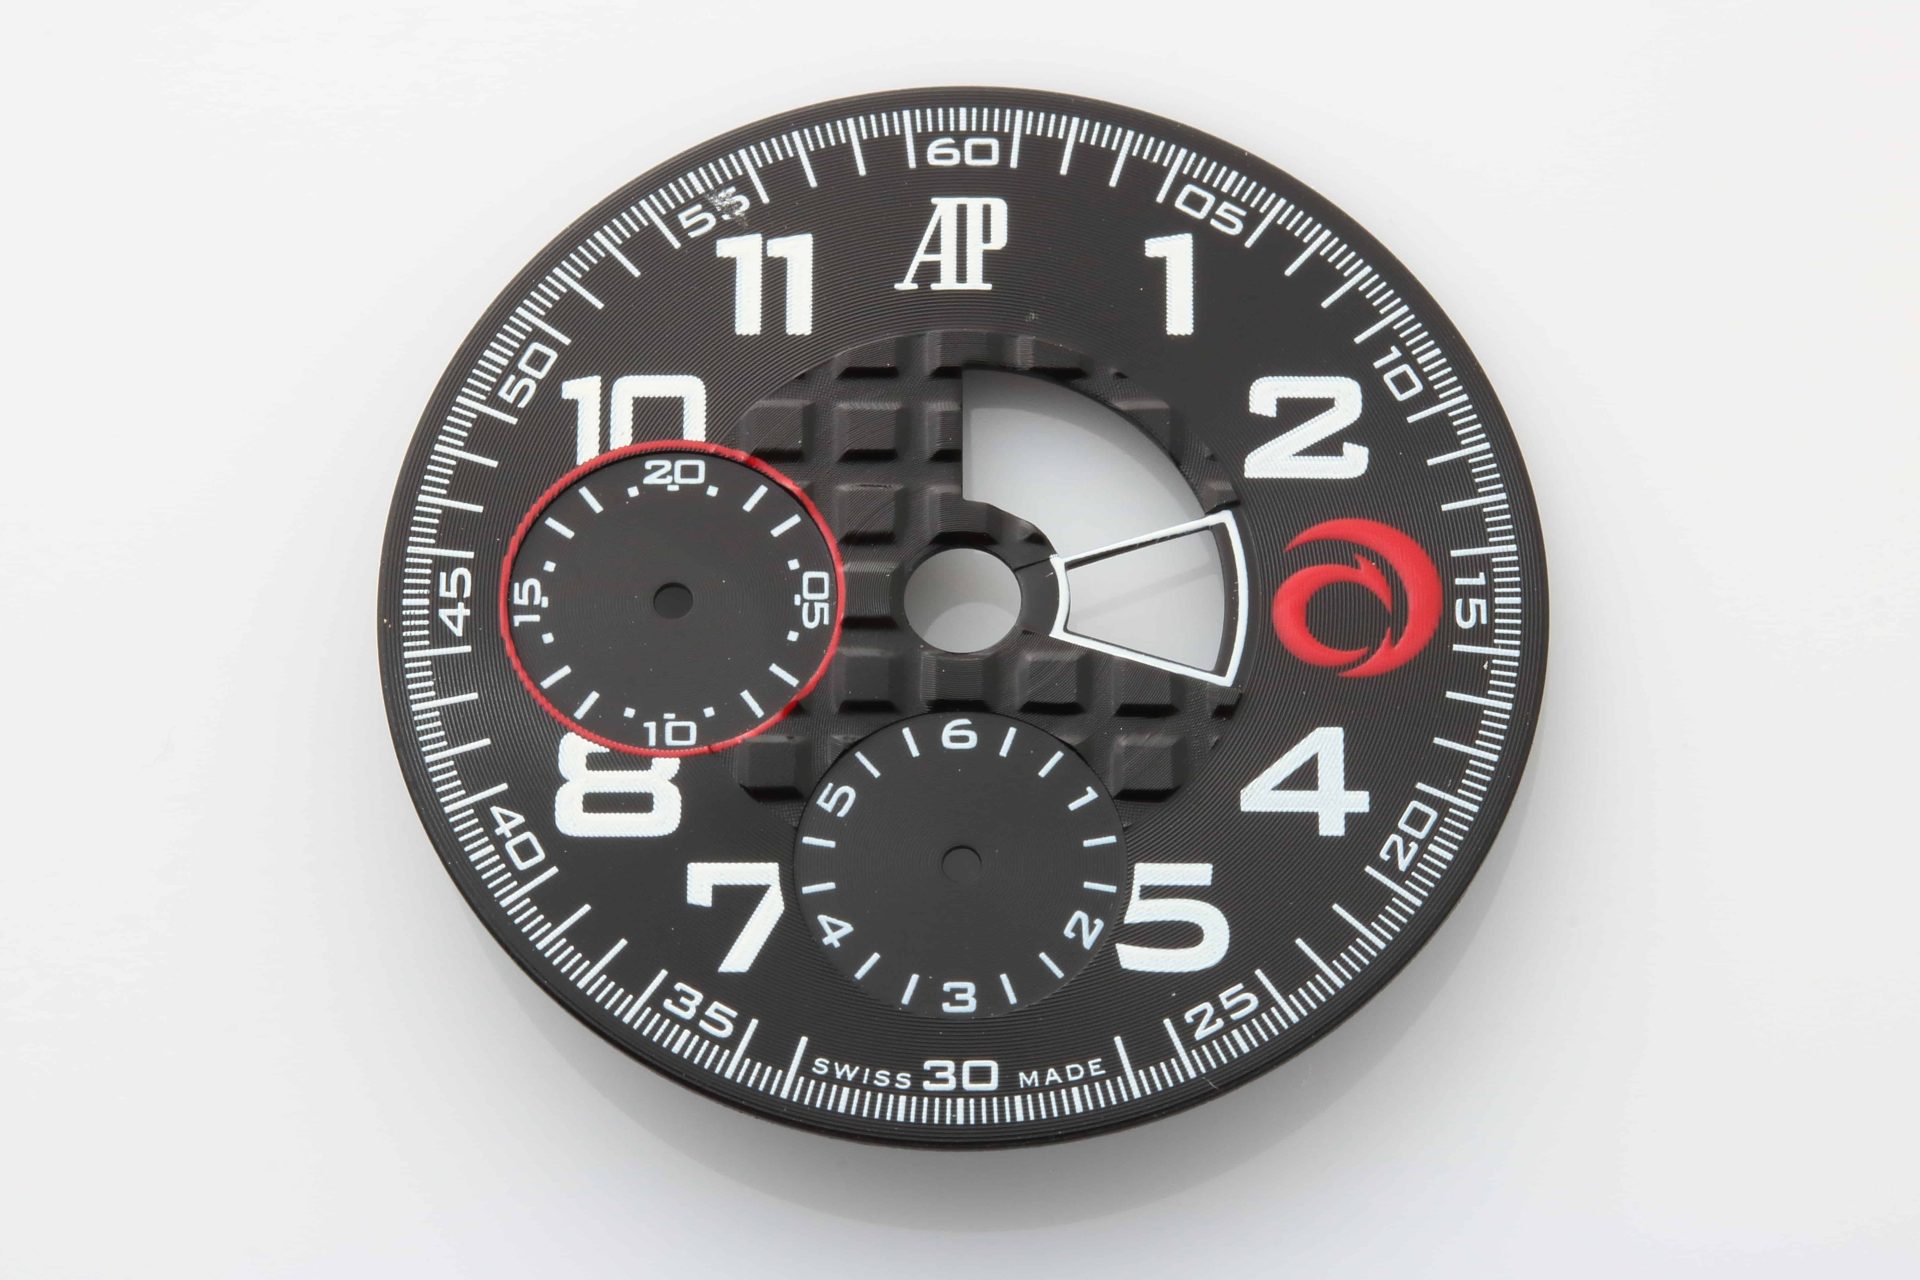 Audemars Piguet Alinghi Royal Oak Offshore Chronograph Wristwatch Dial - Rare Watch Parts